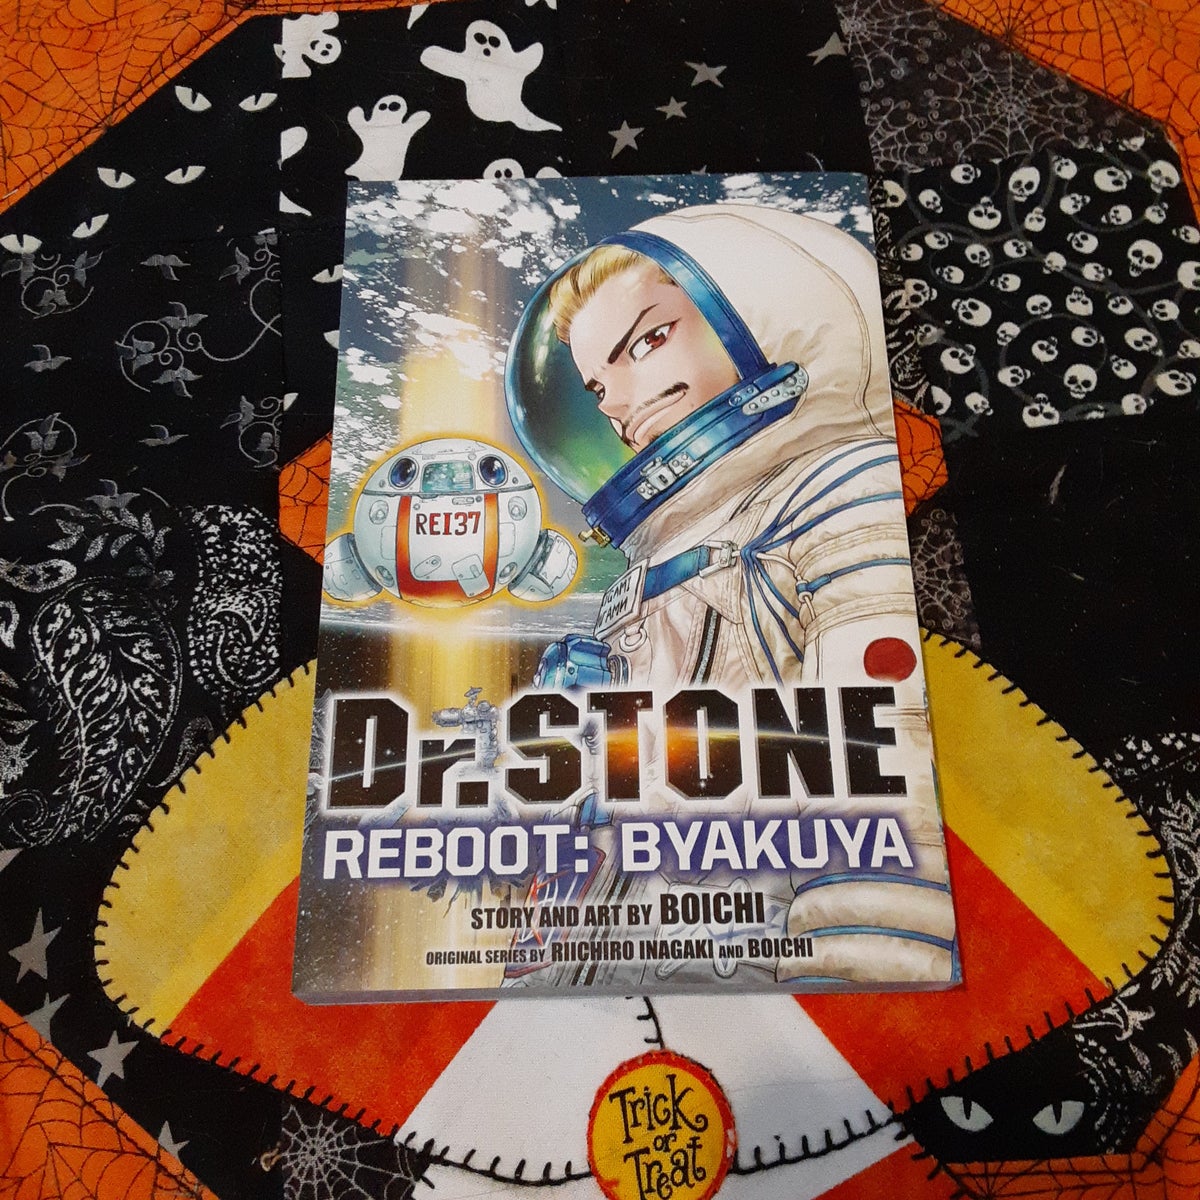 Dr. STONE, Vol. 3, Book by Riichiro Inagaki, Boichi